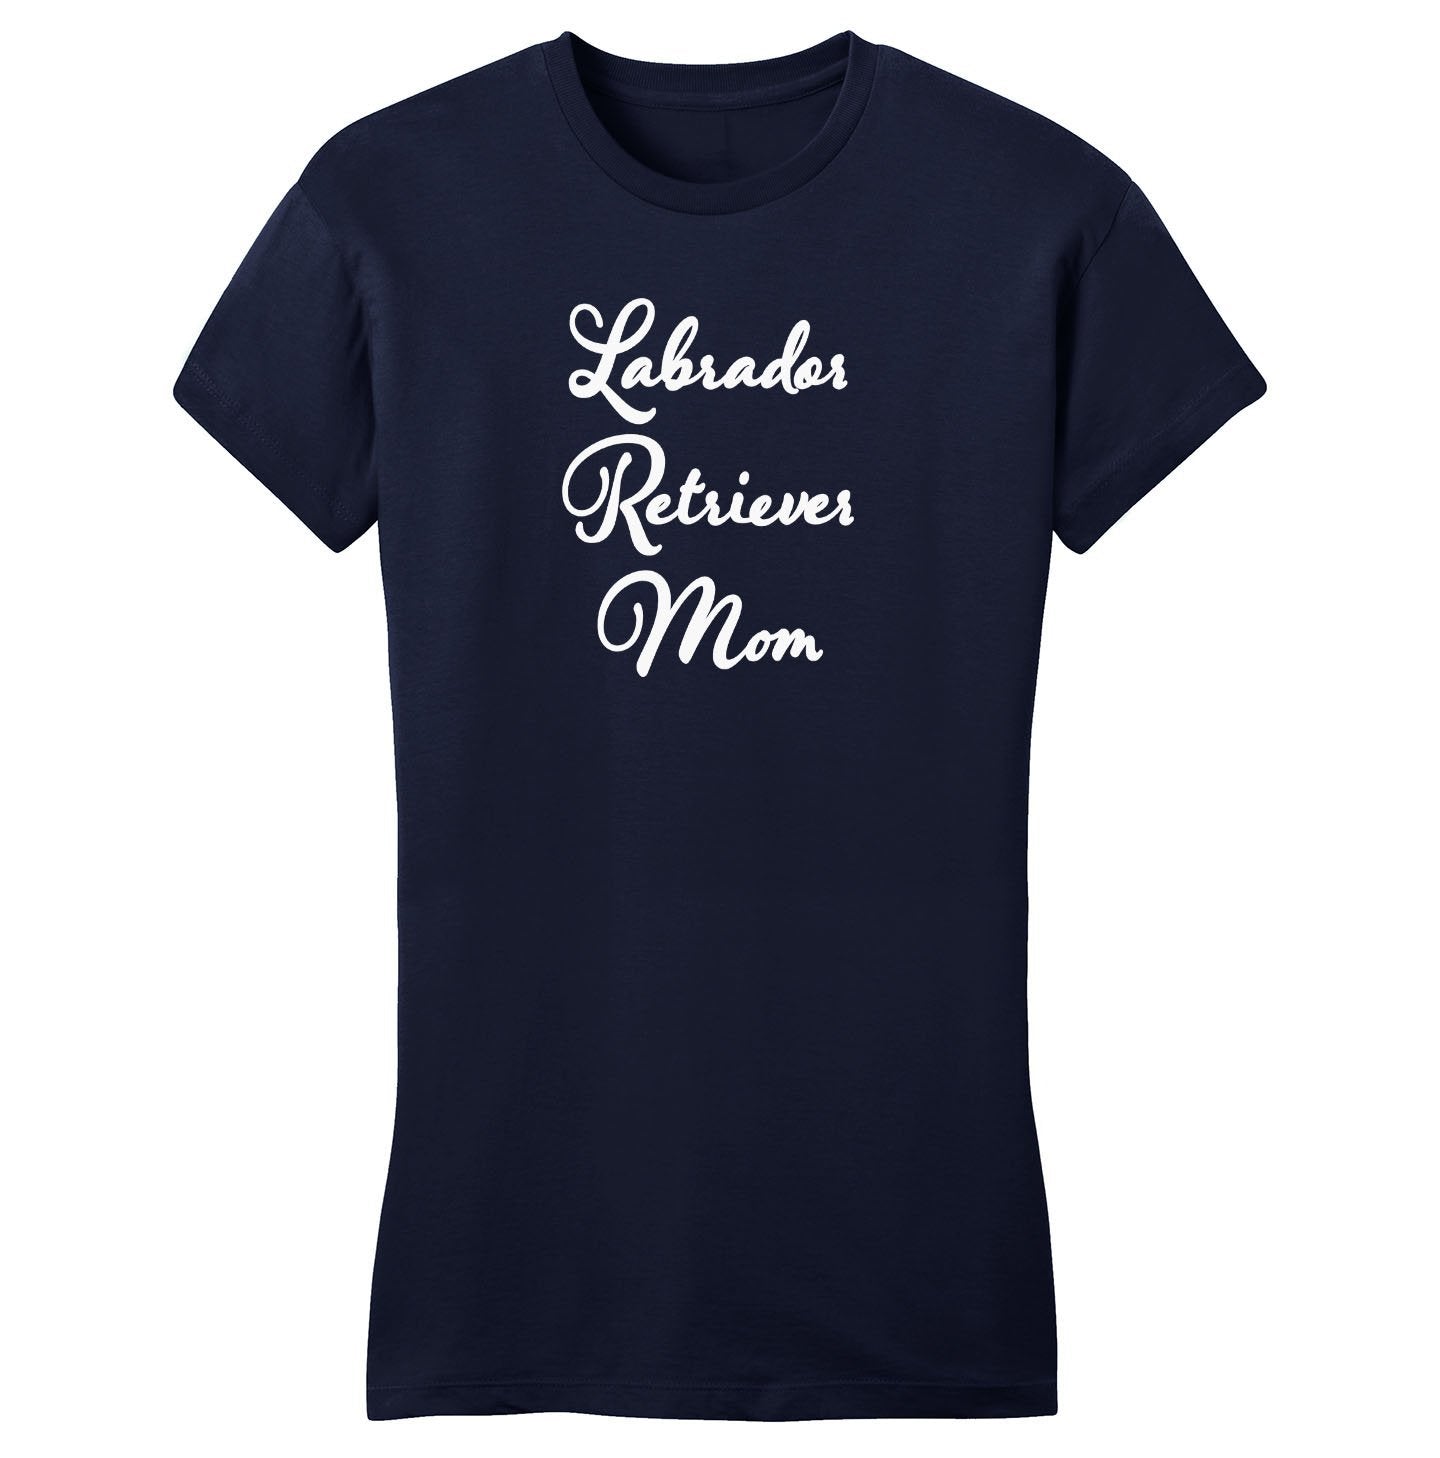 Labrador Retriever Mom - Script - Women's Fitted T-Shirt